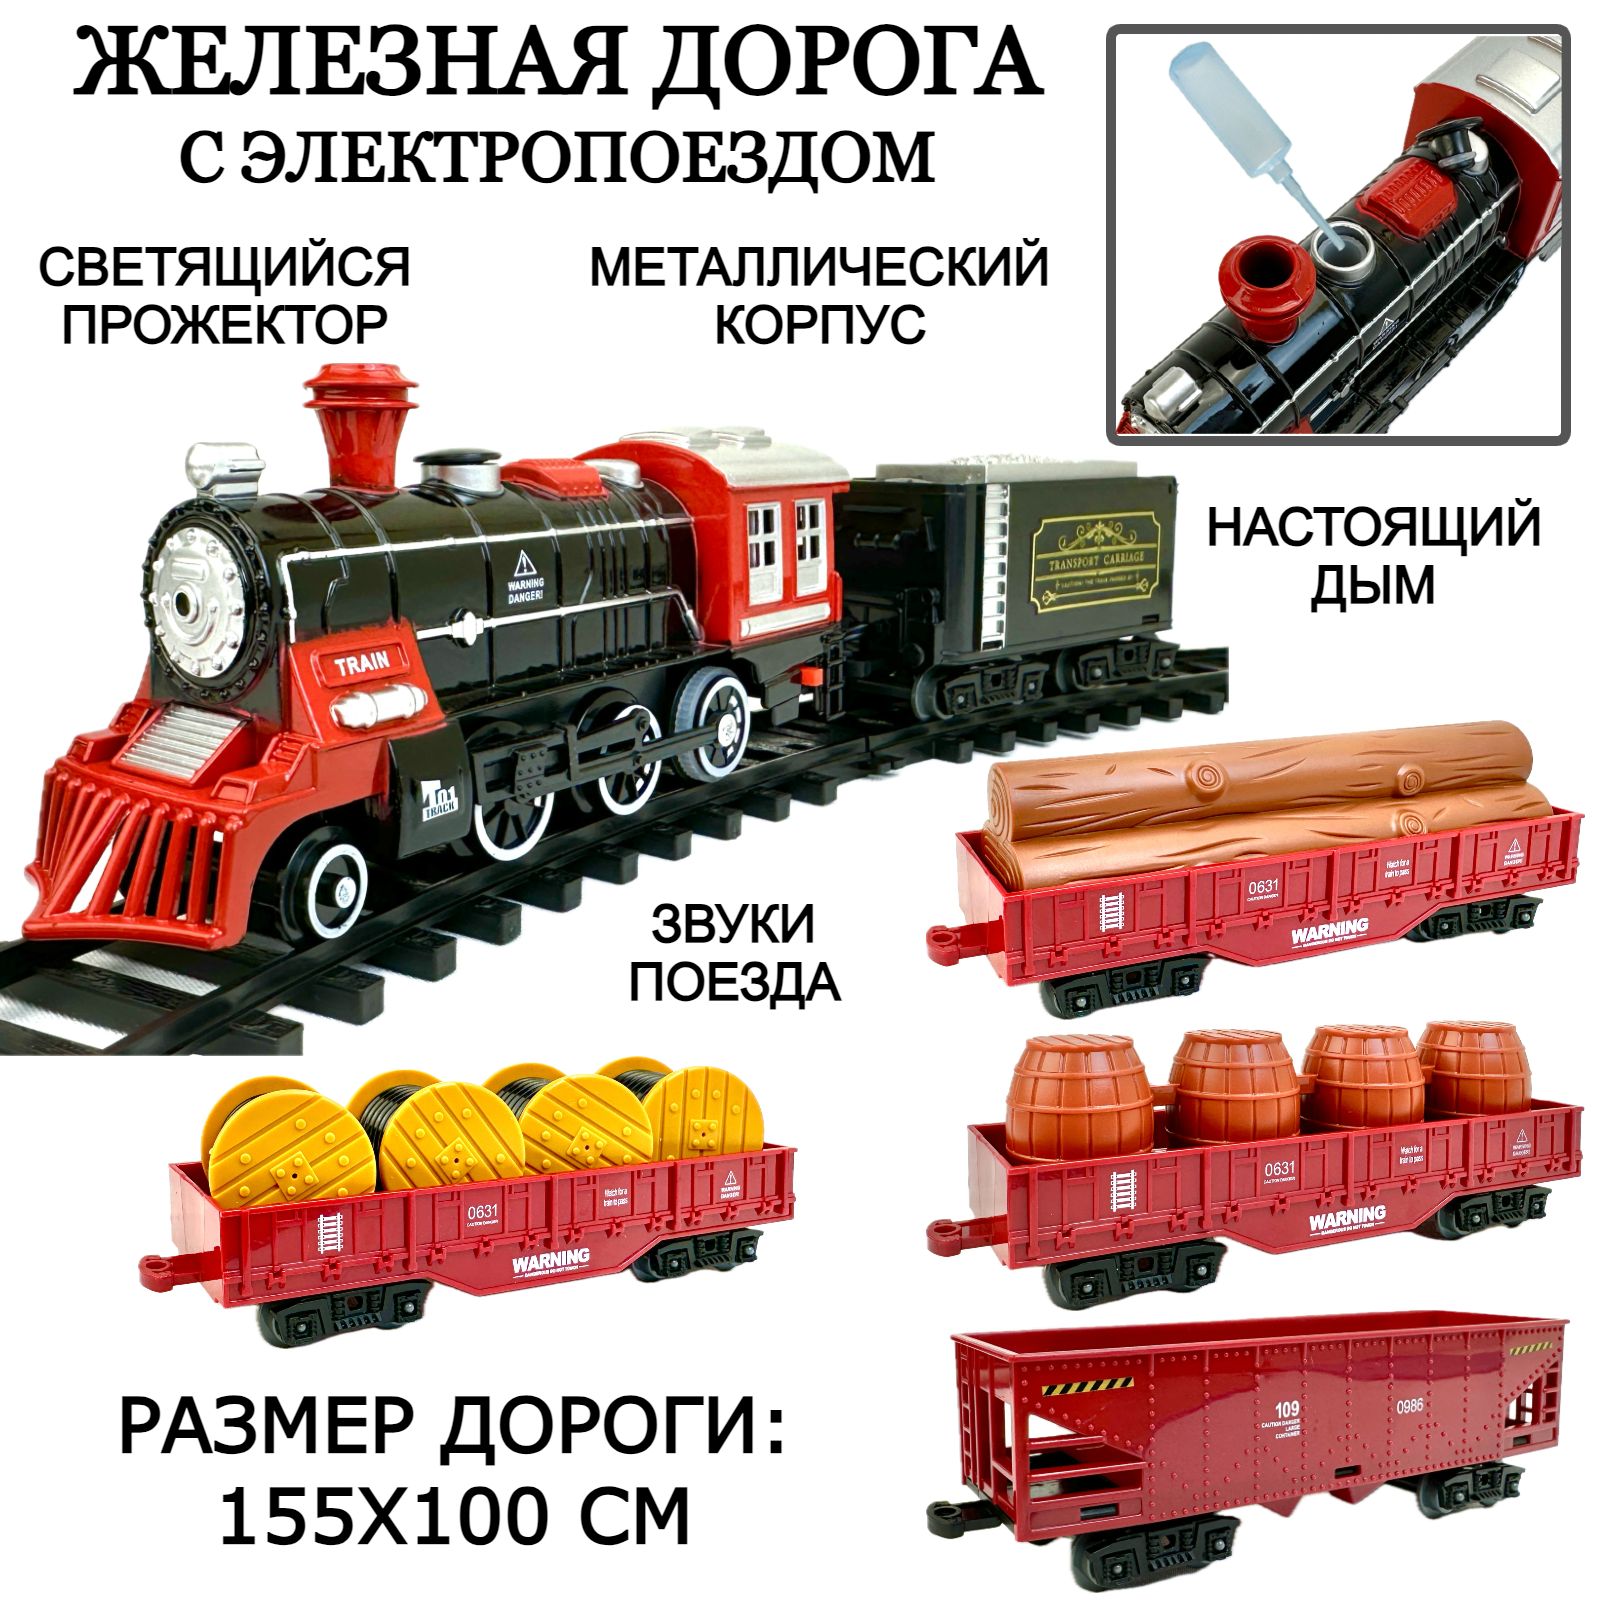 Детская железная дорога с поездом Classic Train 22 элемента размер дороги 155х100 см